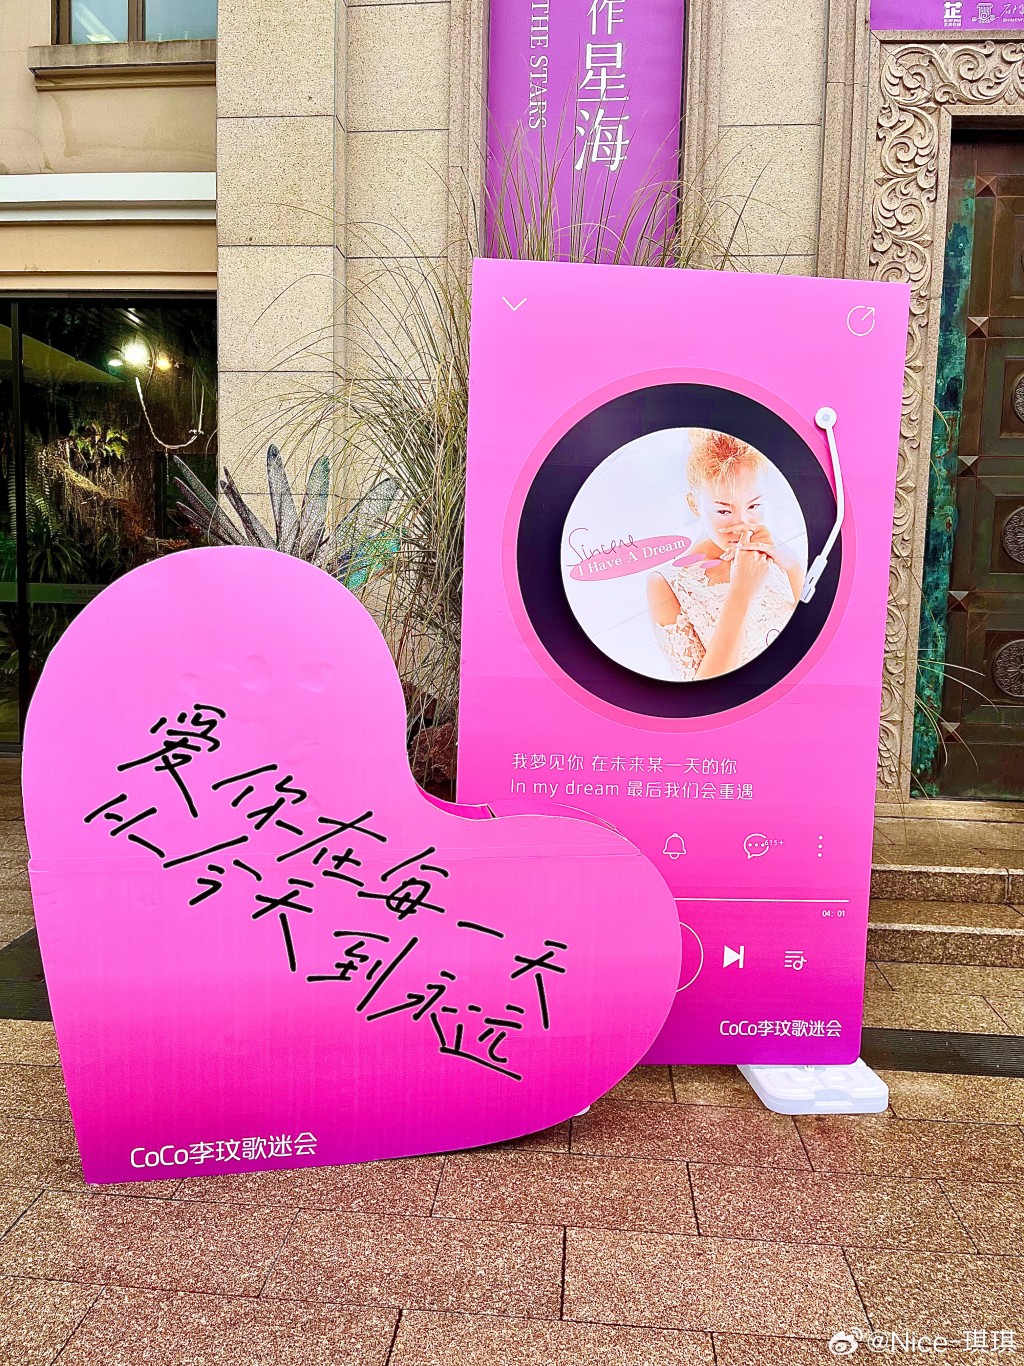 李玟纪念生日会在武汉举办。